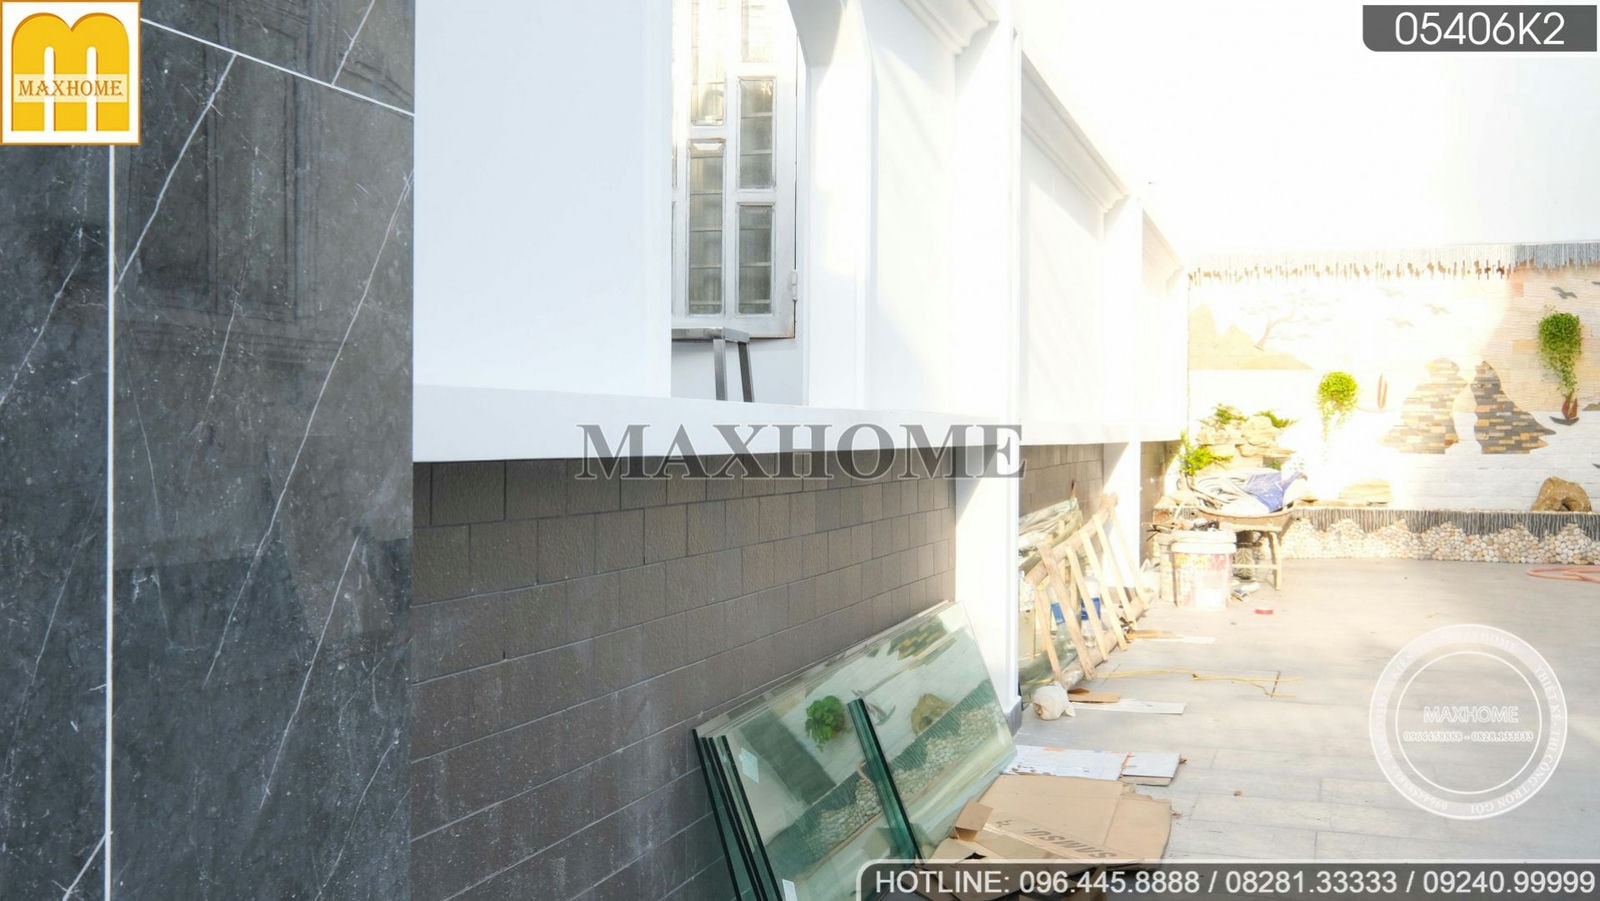 Maxhome kiểm tra chất lượng công trình thi công tại Đồng Nai | MH02557